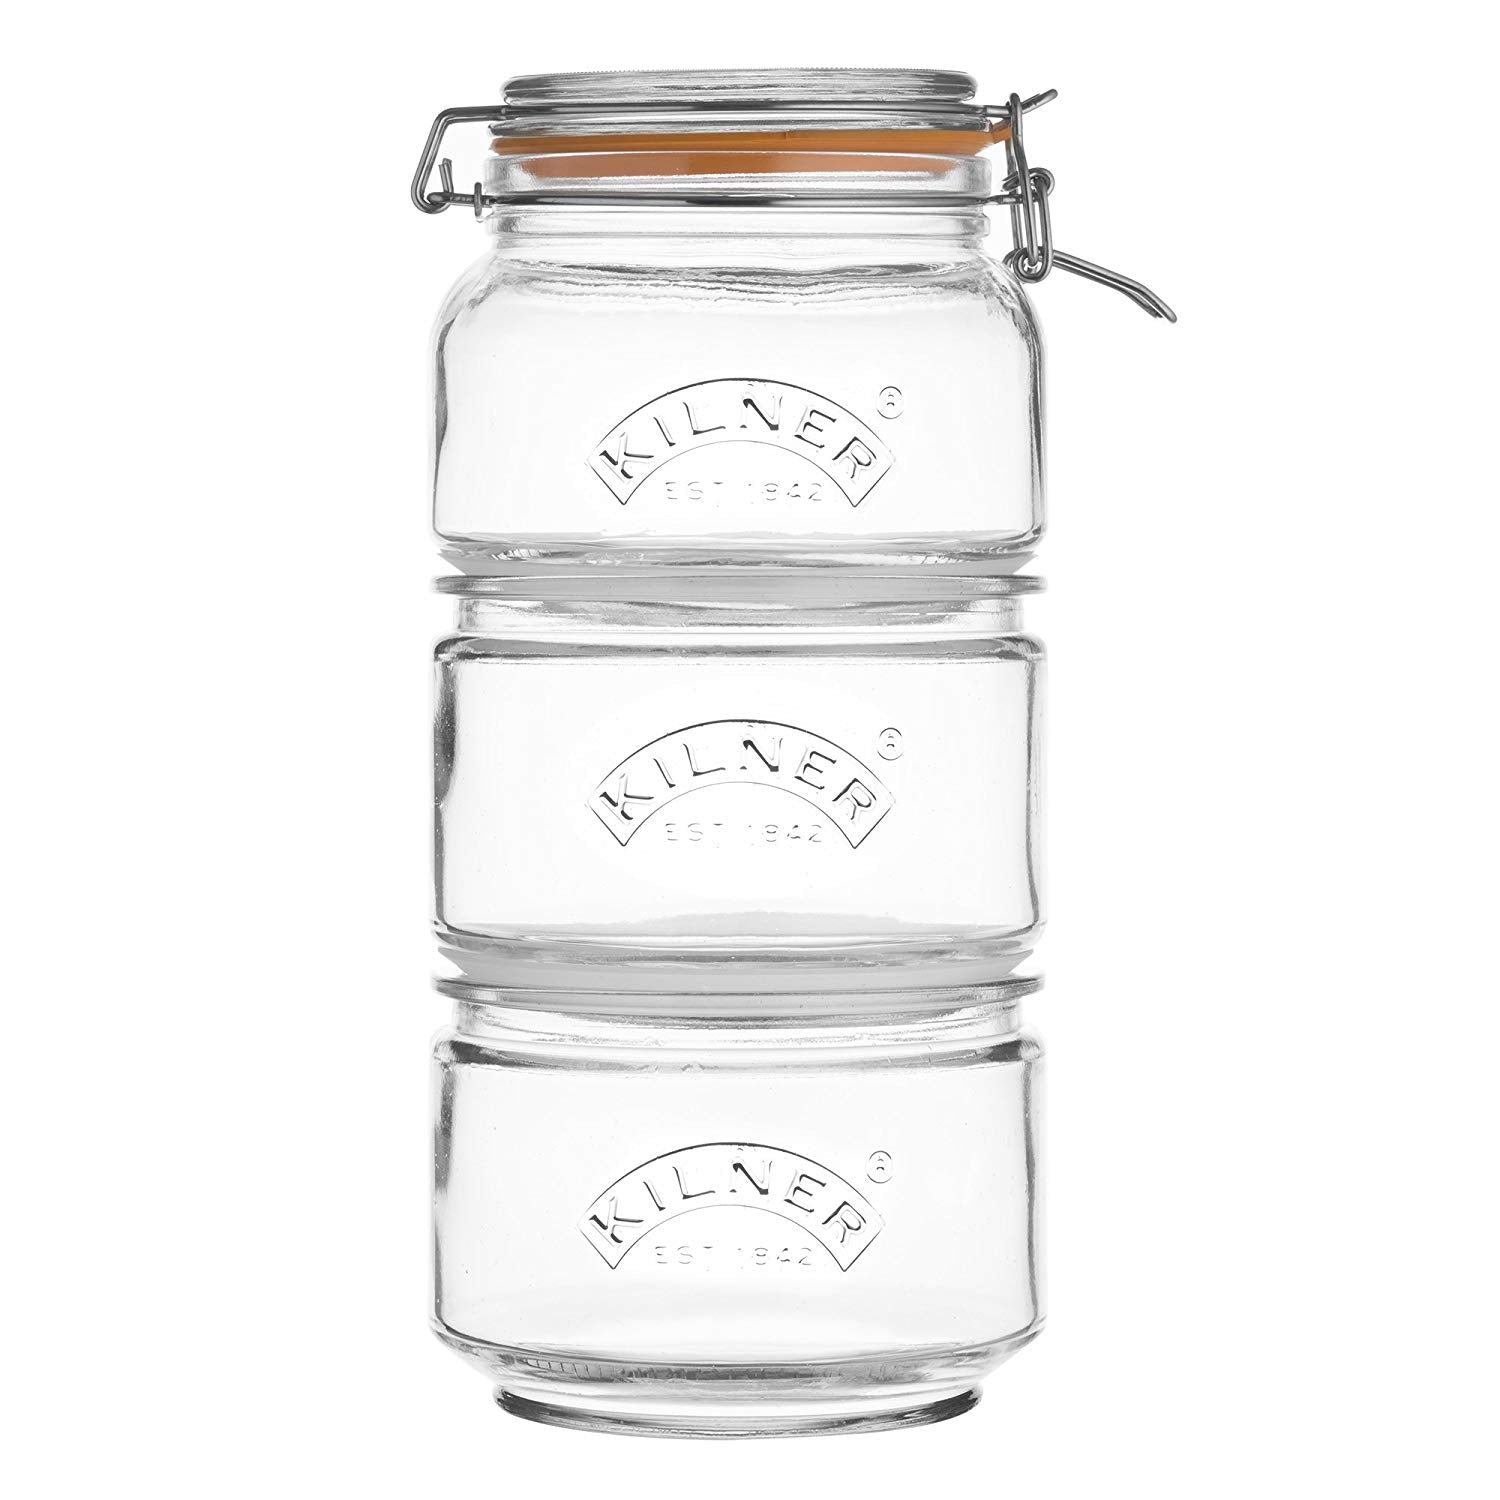 Kilner Glass Stackable Storage Jar